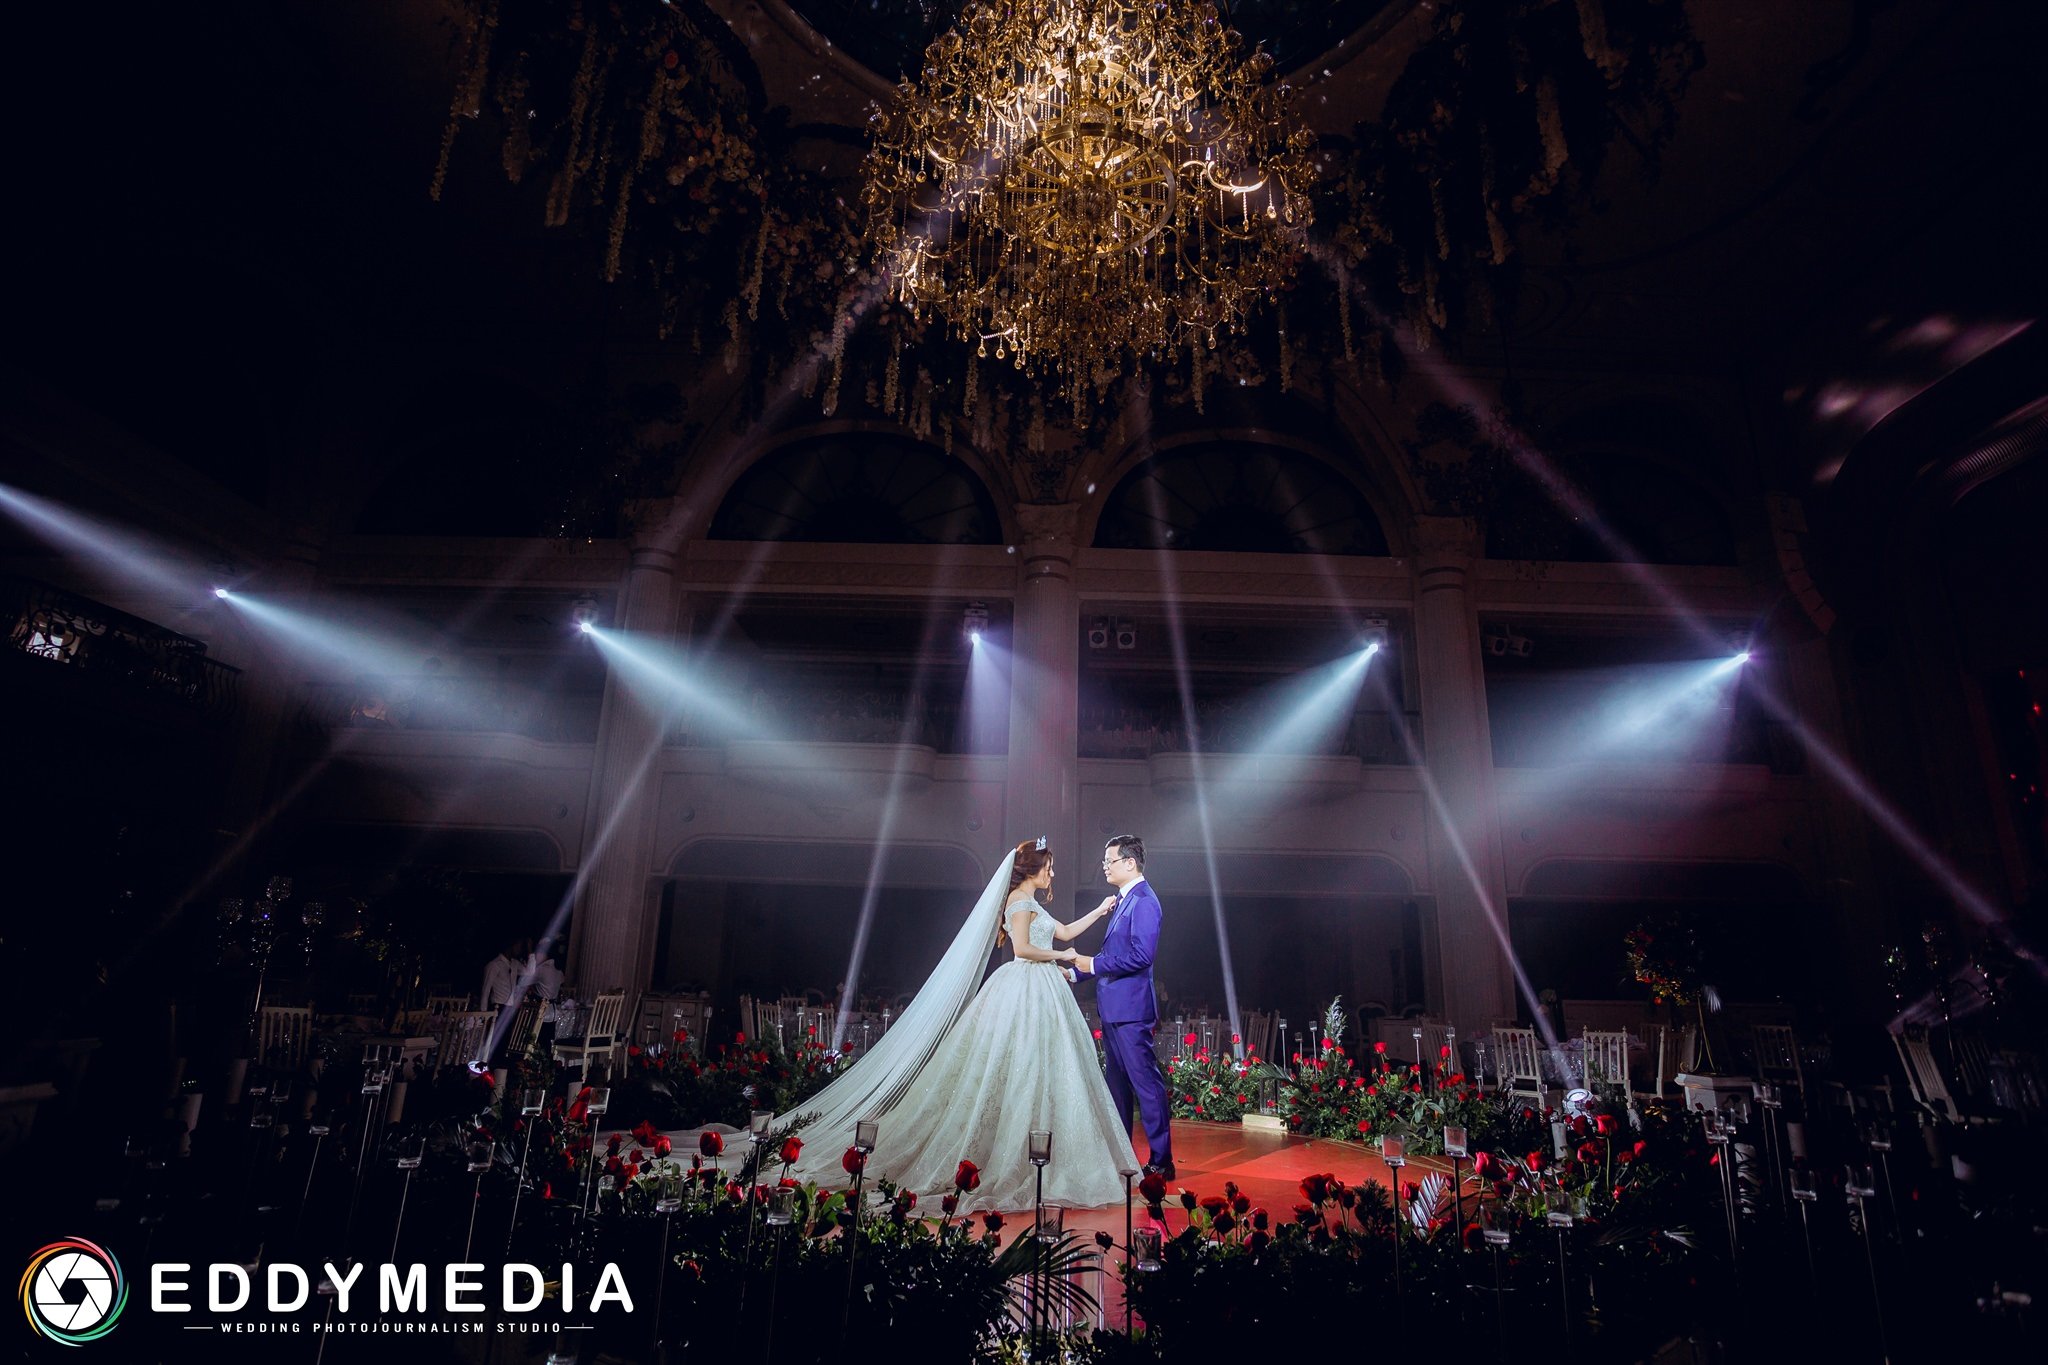 EDDY MEDIA chuyên cung cấp các dịch vụ chụp ảnh phóng sự cưới tốt nhất hiện nay